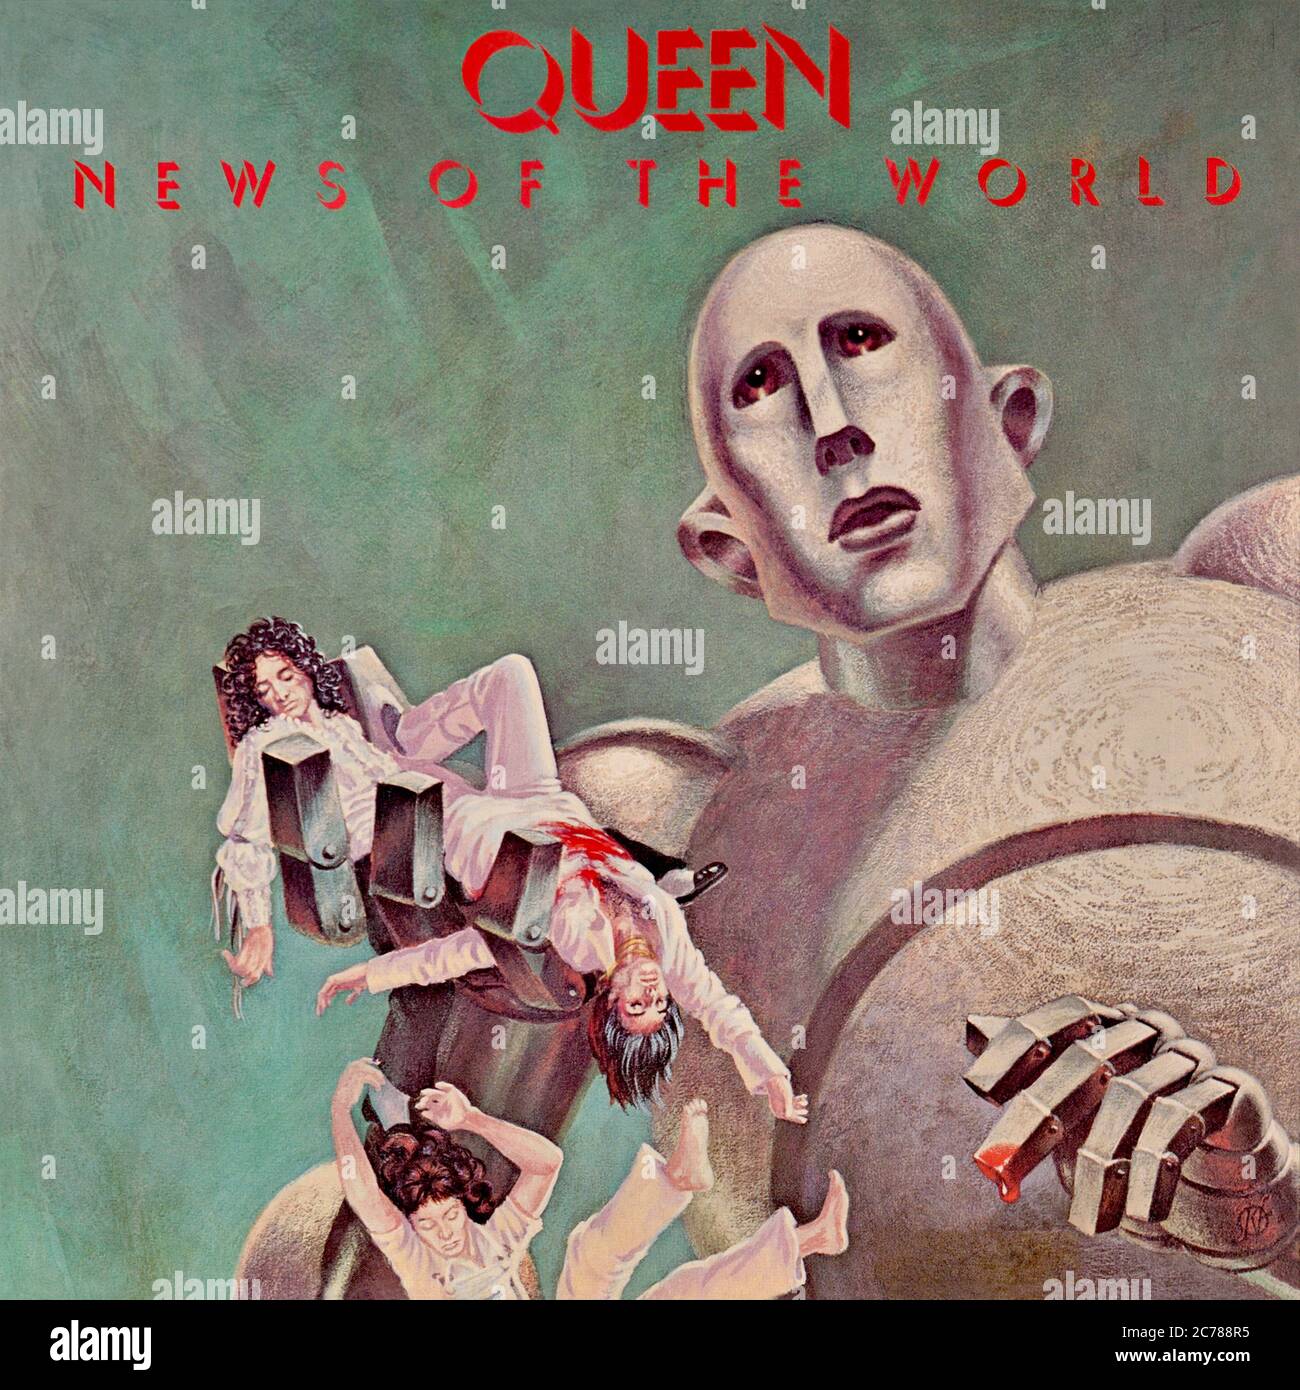 Queen - copertina originale dell'album in vinile - News of the World - 1977 Foto Stock